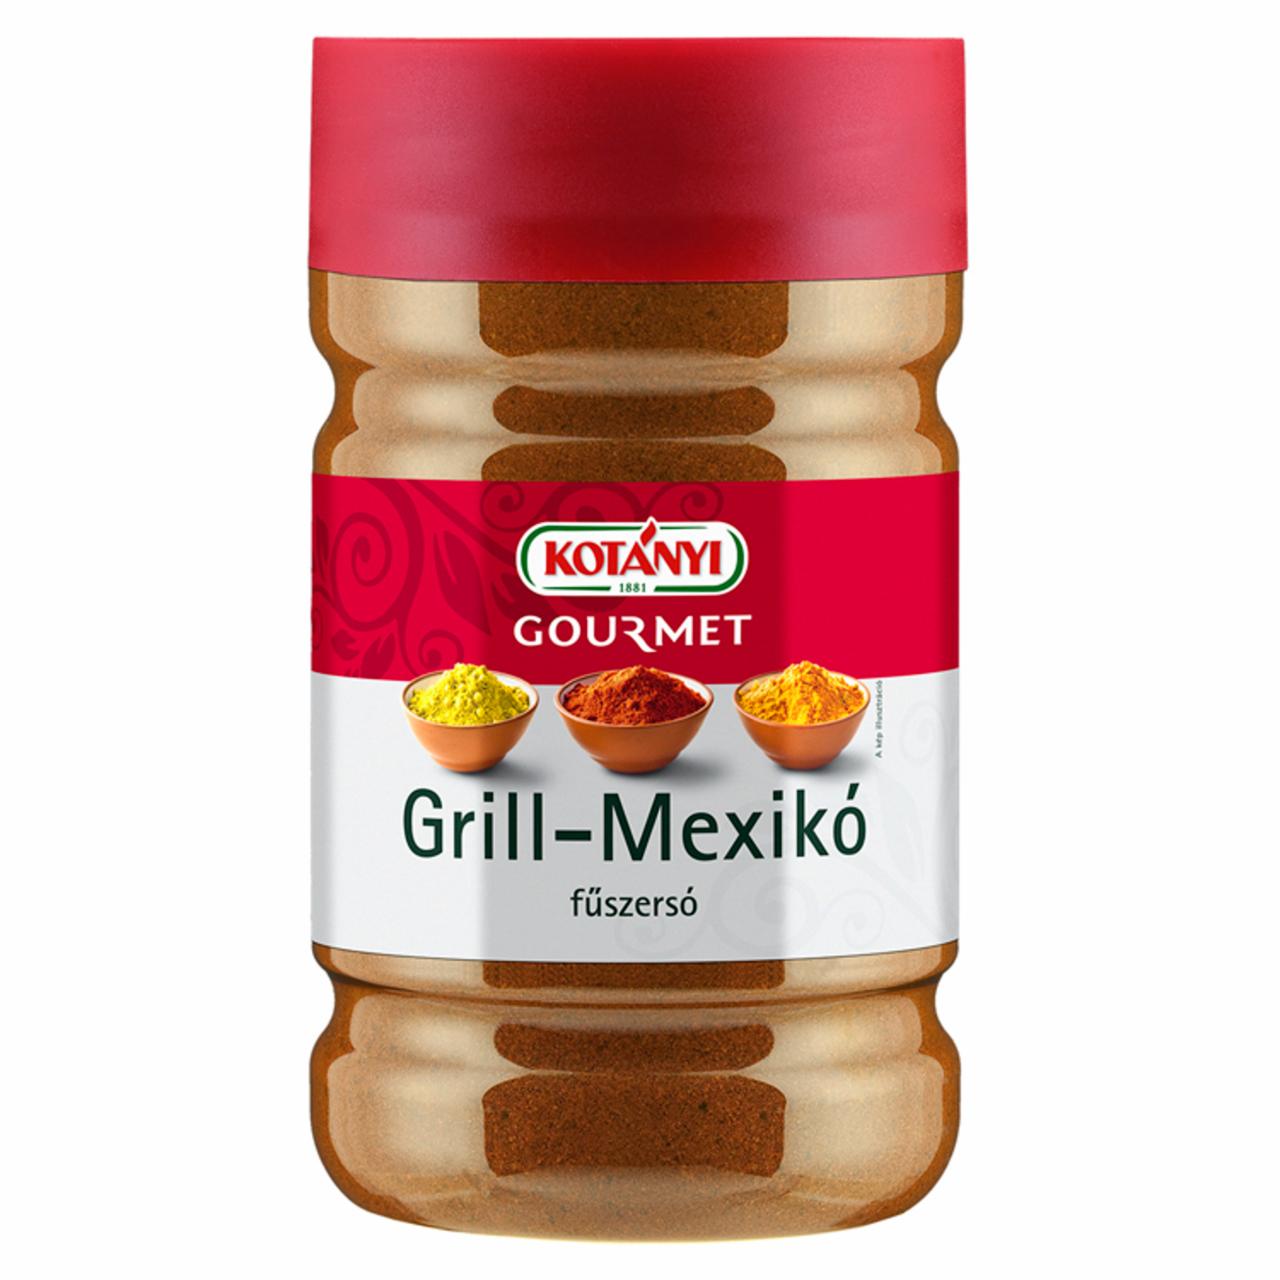 Képek - Kotányi Gourmet Grill-Mexikó fűszersó 950 g